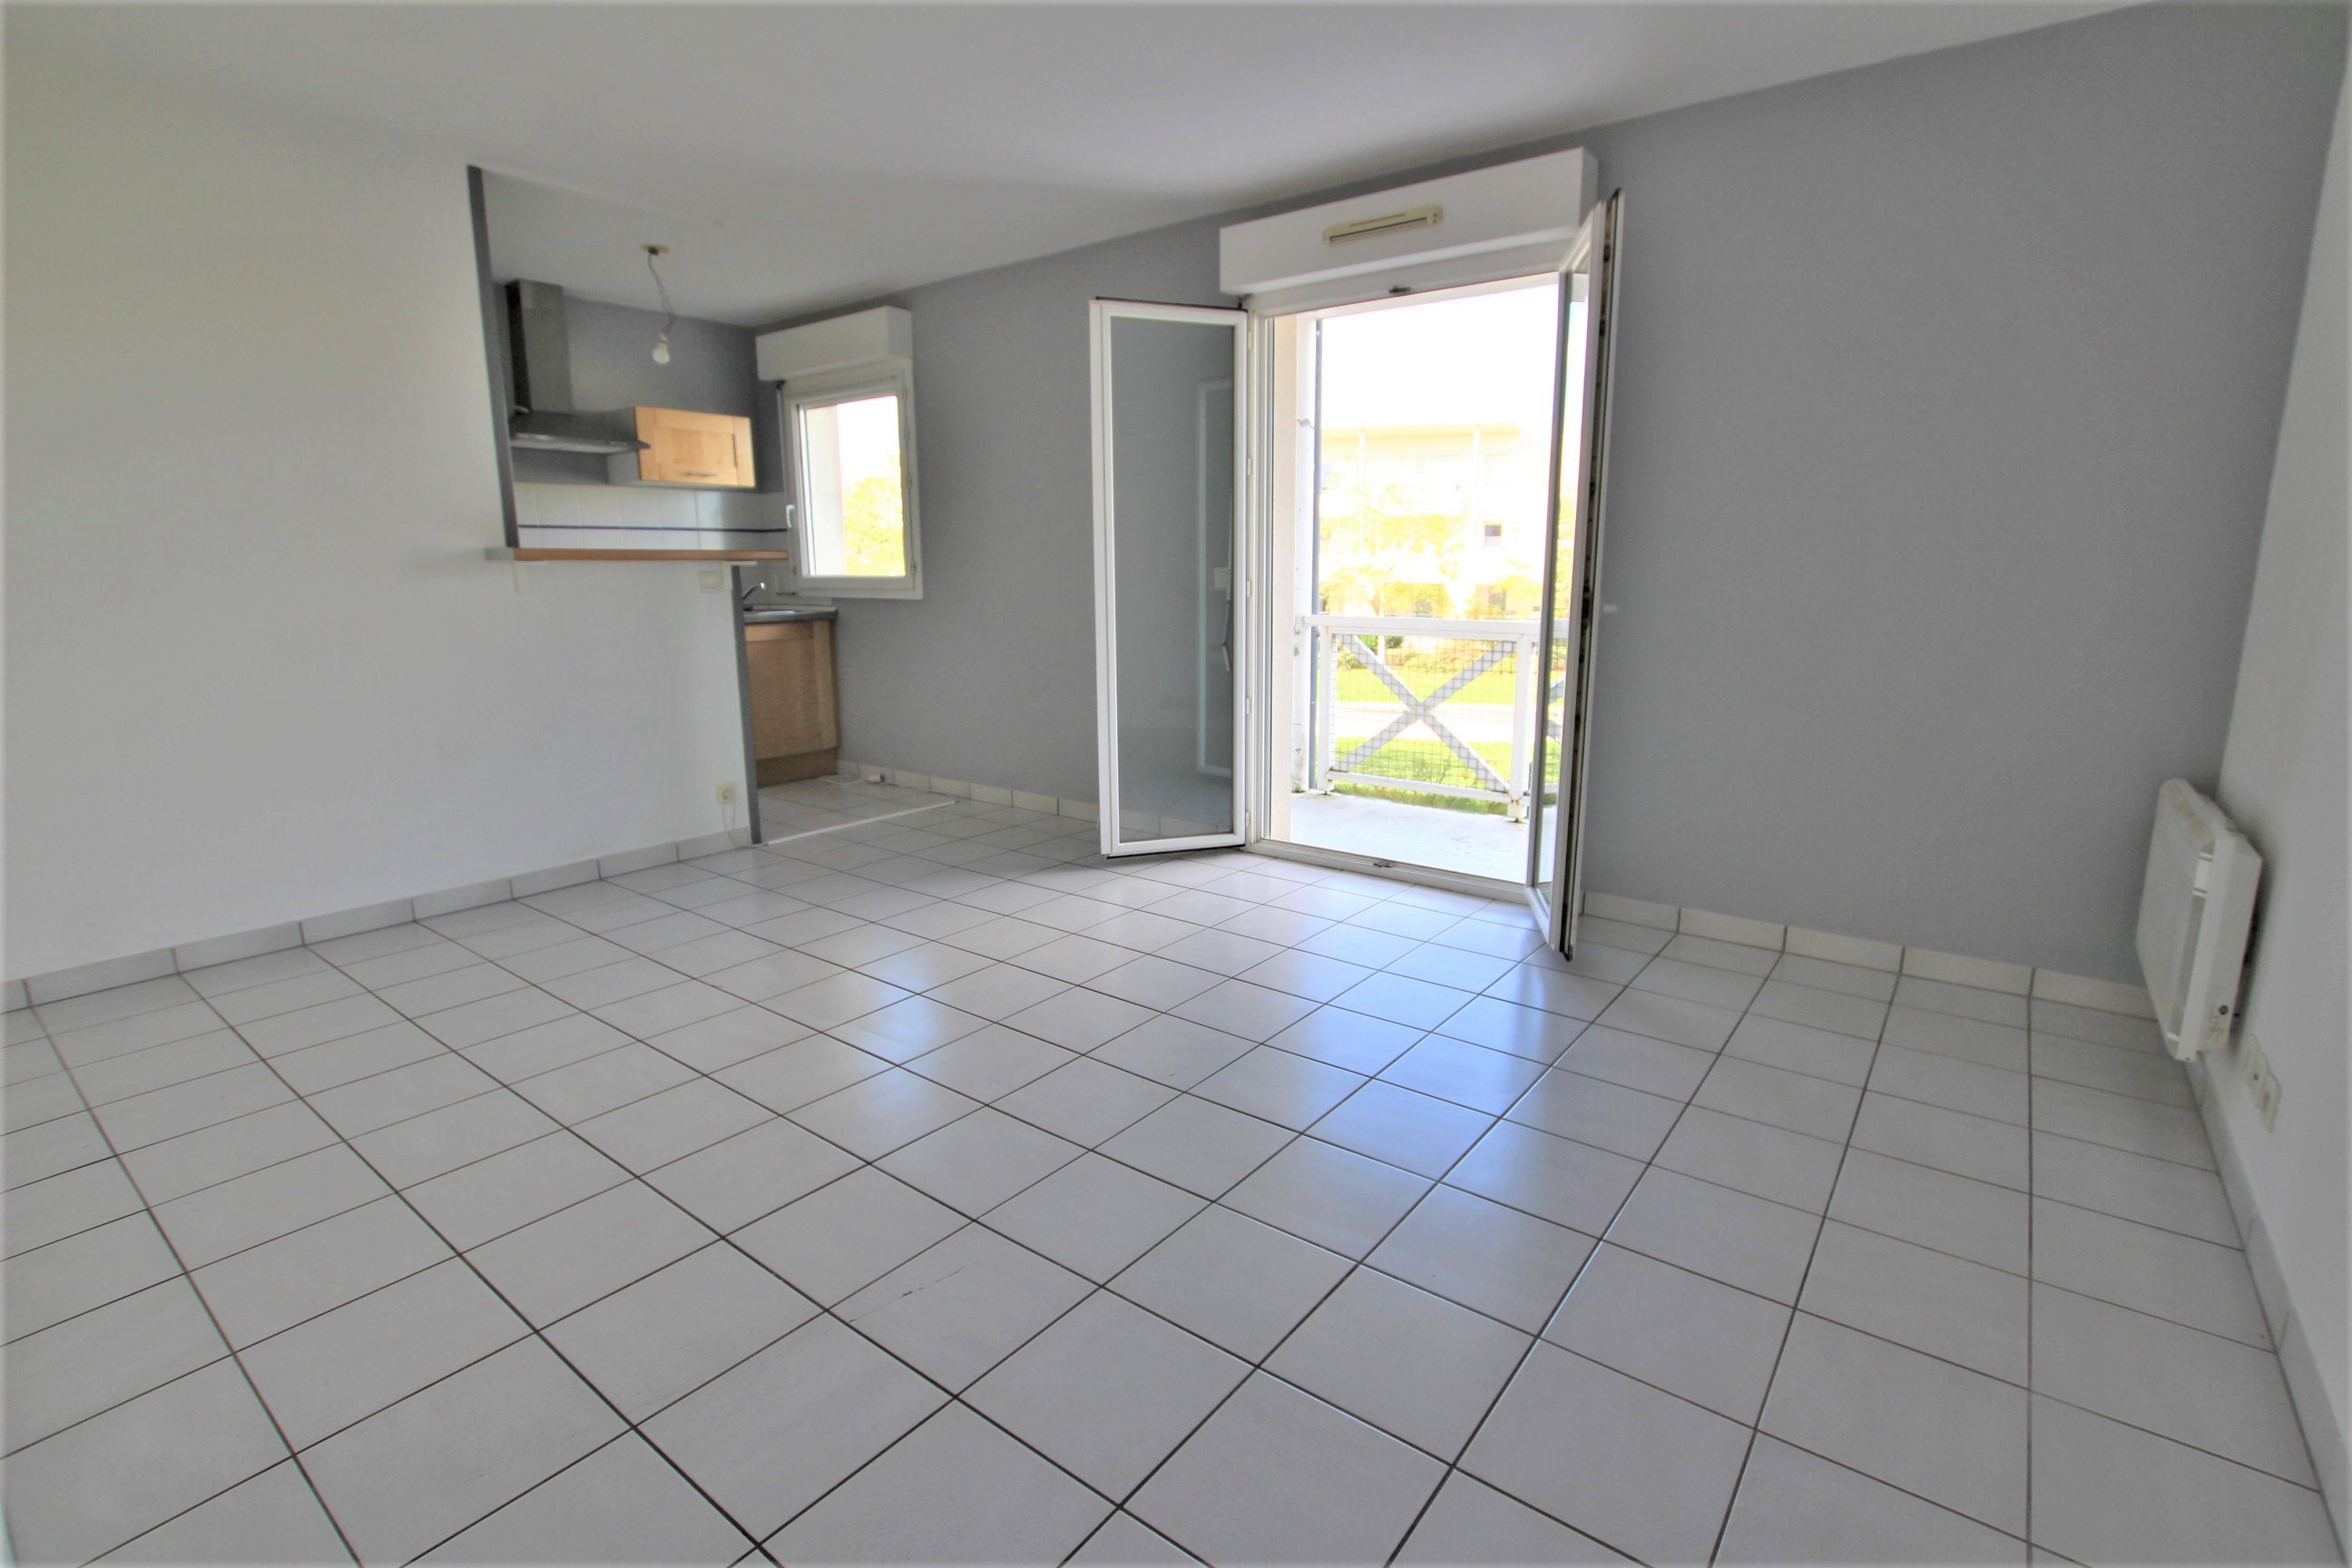 Qovop Immobilier | Achat Appartement 44.5 m² - 17440 Aytré